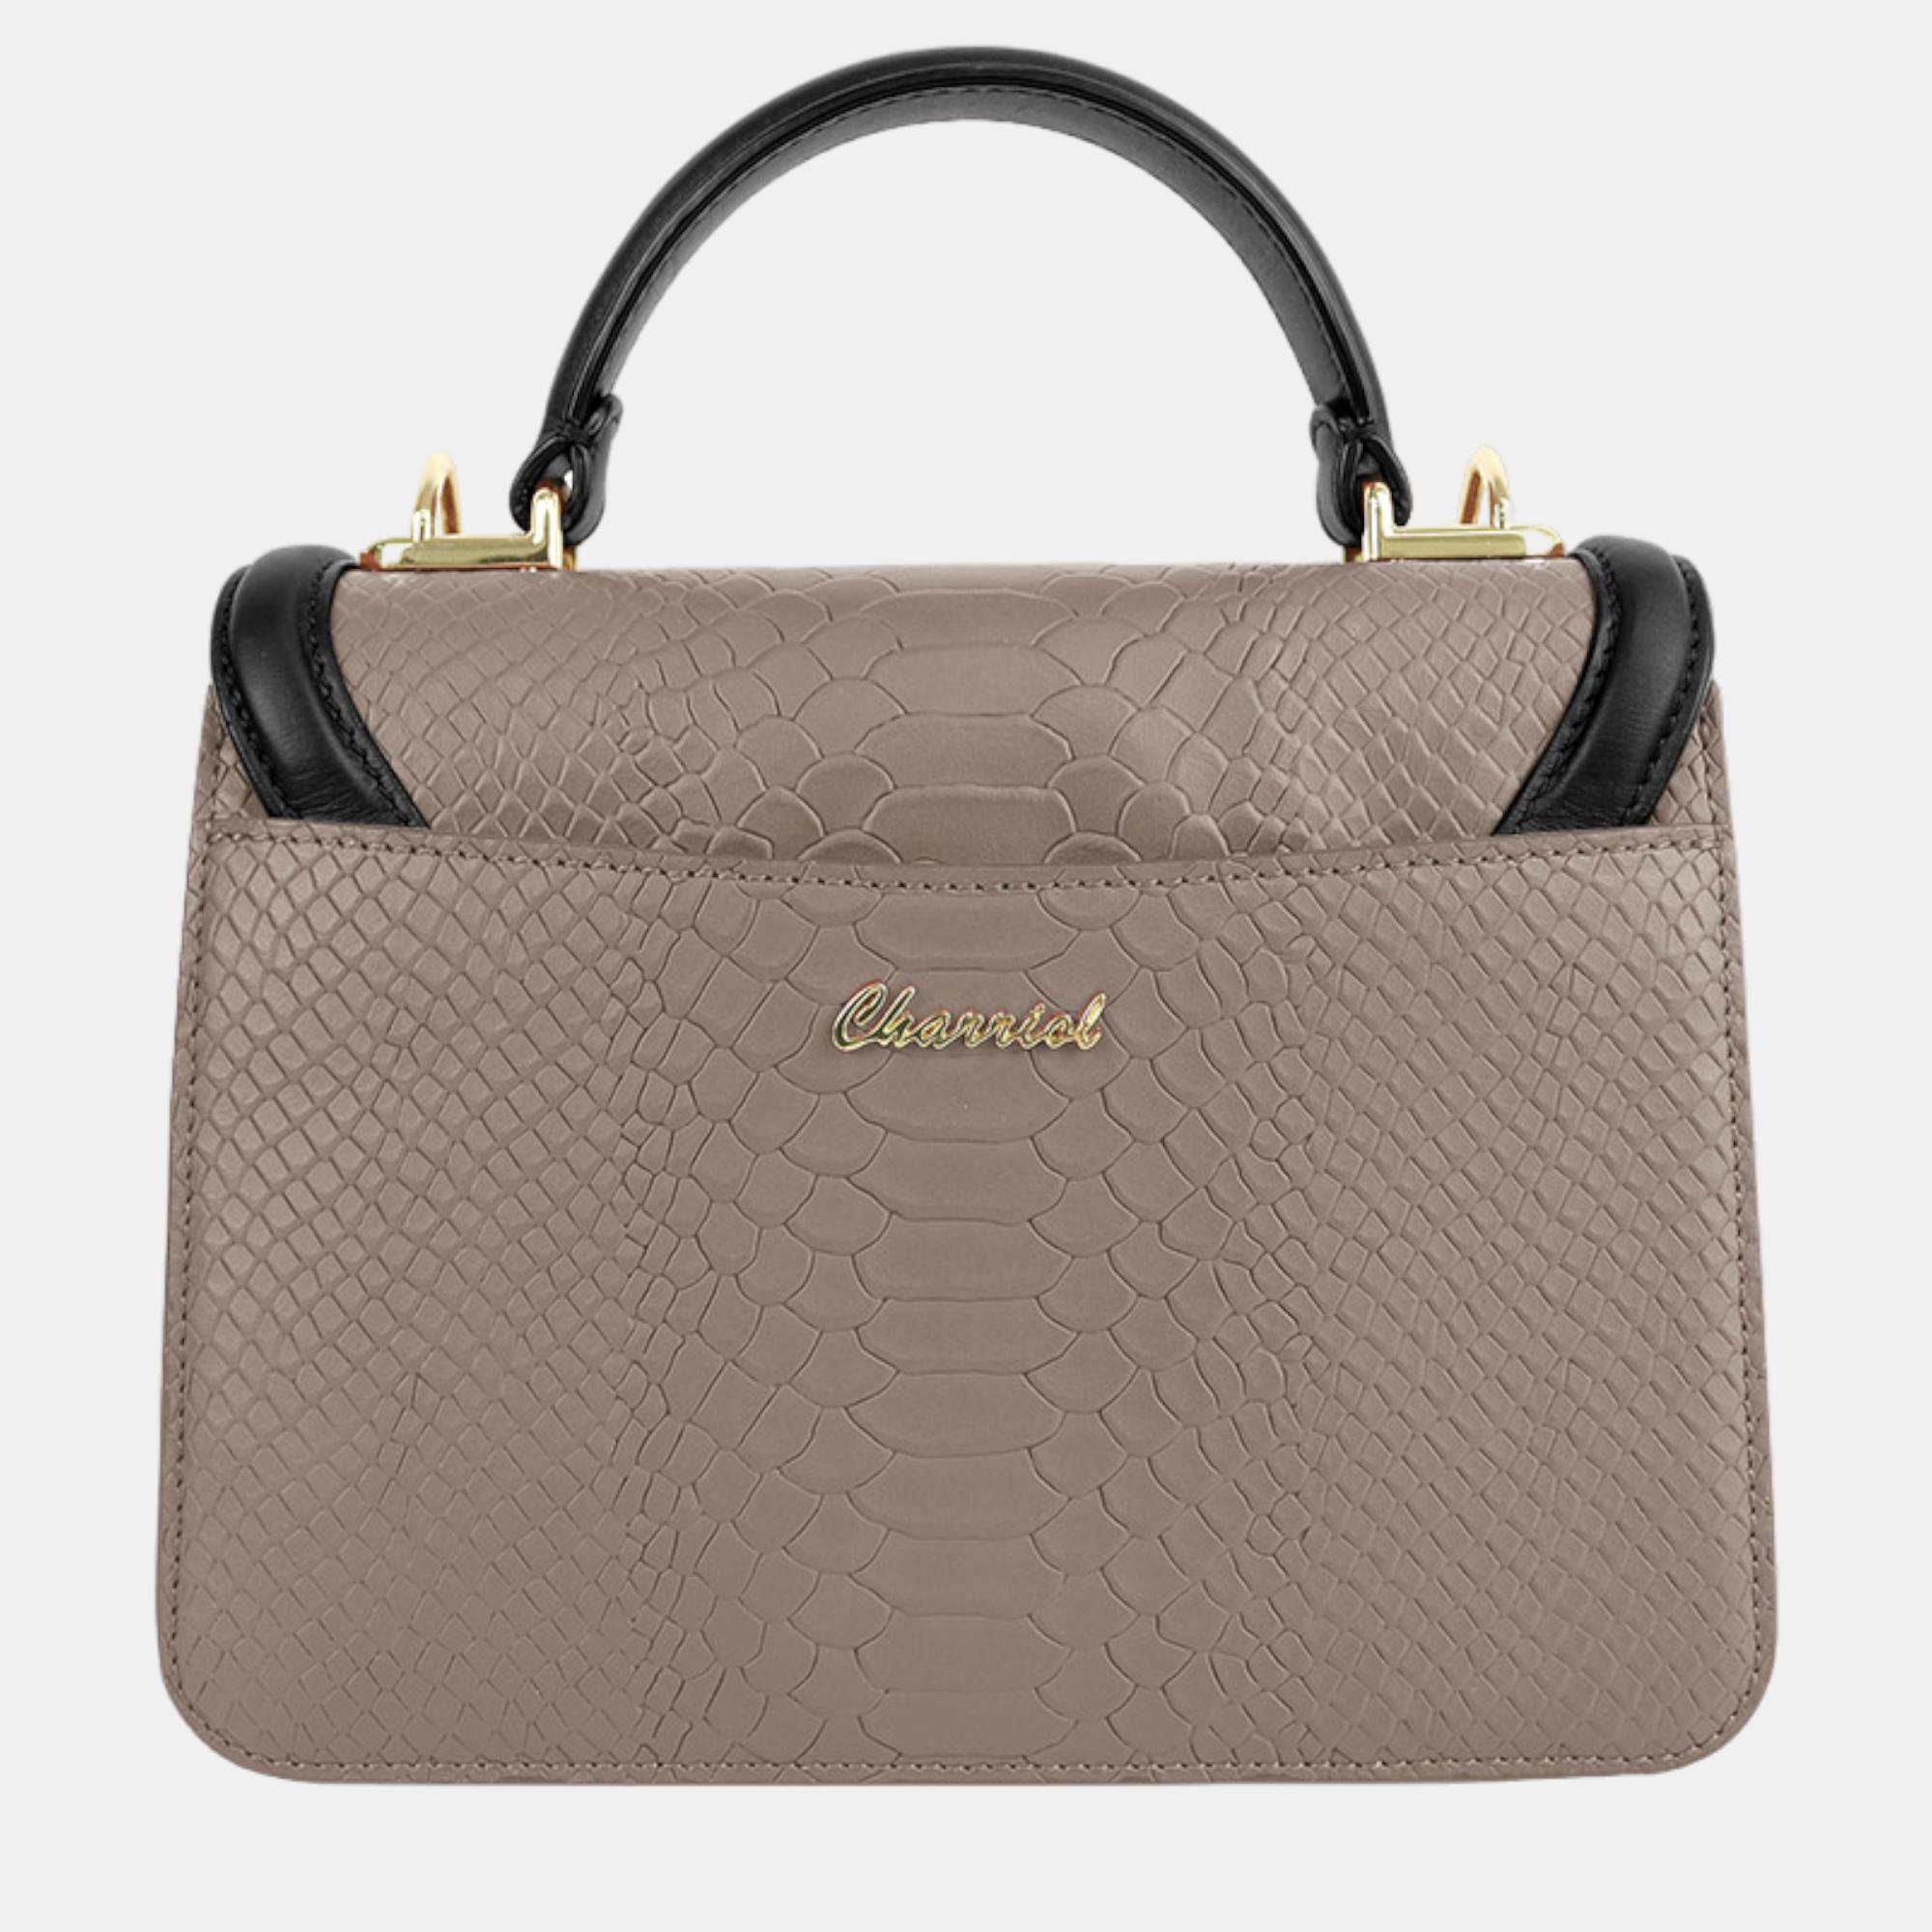 Charriol Stone/ Black Leather LAETITIAclassic Handbag